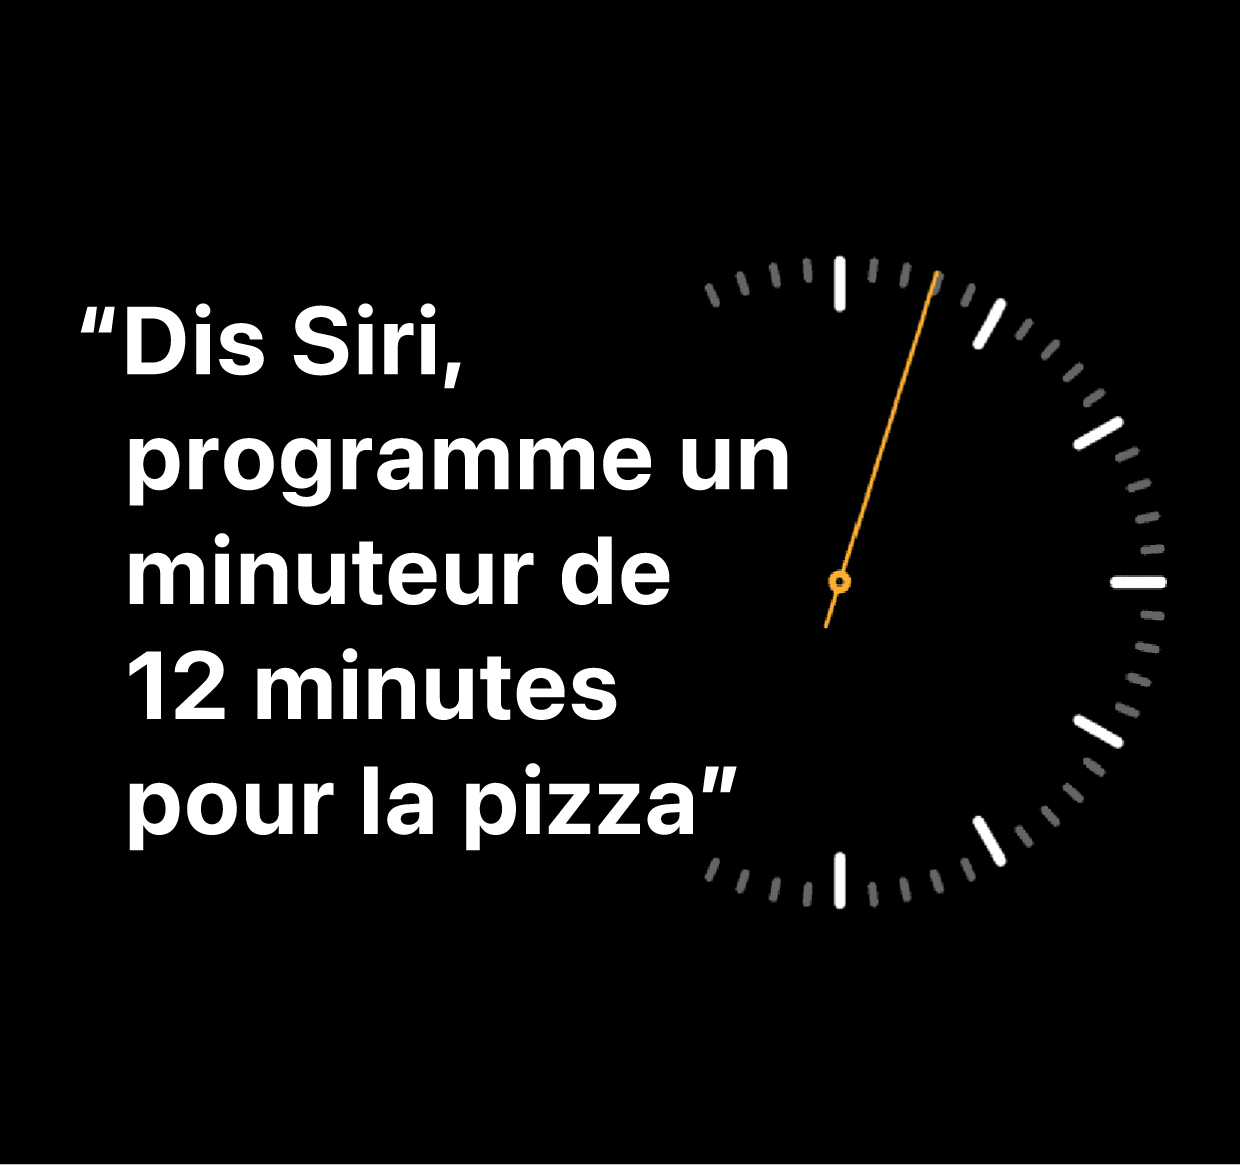 Une illustration des mots : “Dis Siri, programme un minuteur de 12 minutes pour la pizza”.